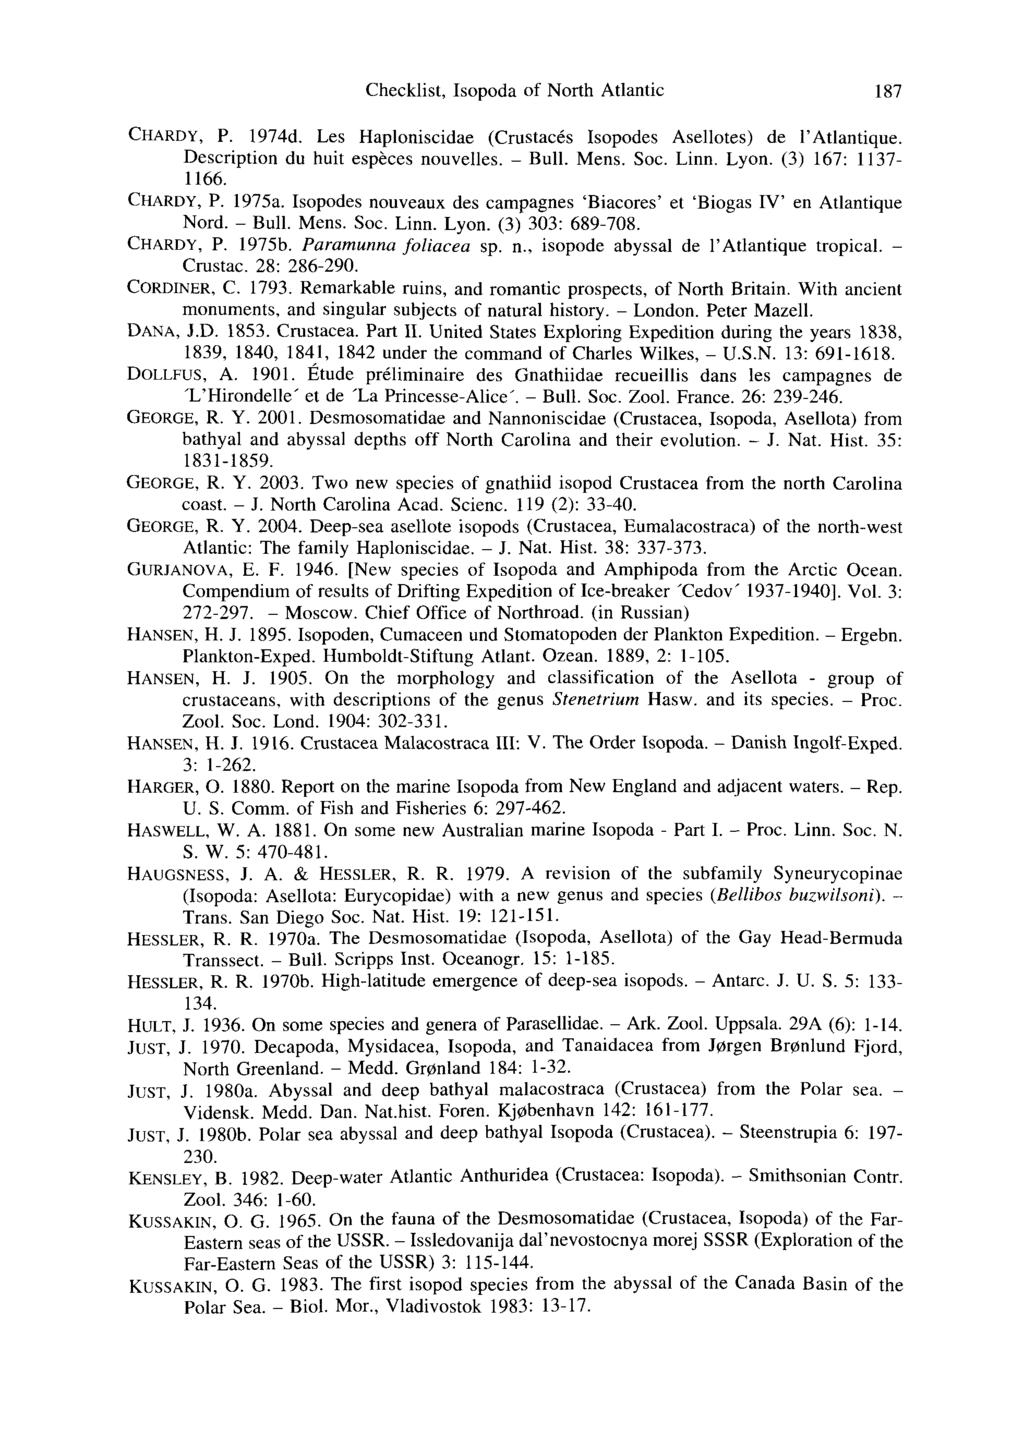 Checklist, Isopoda of North Atlantic 187 CHARDY, P. 1974d. Les Haploniscidae (Crustaces Isopodes Asellotes) de l'atlantique. Description du huit especes nouvelles. - Bull. Mens. Soc. Linn. Lyon.